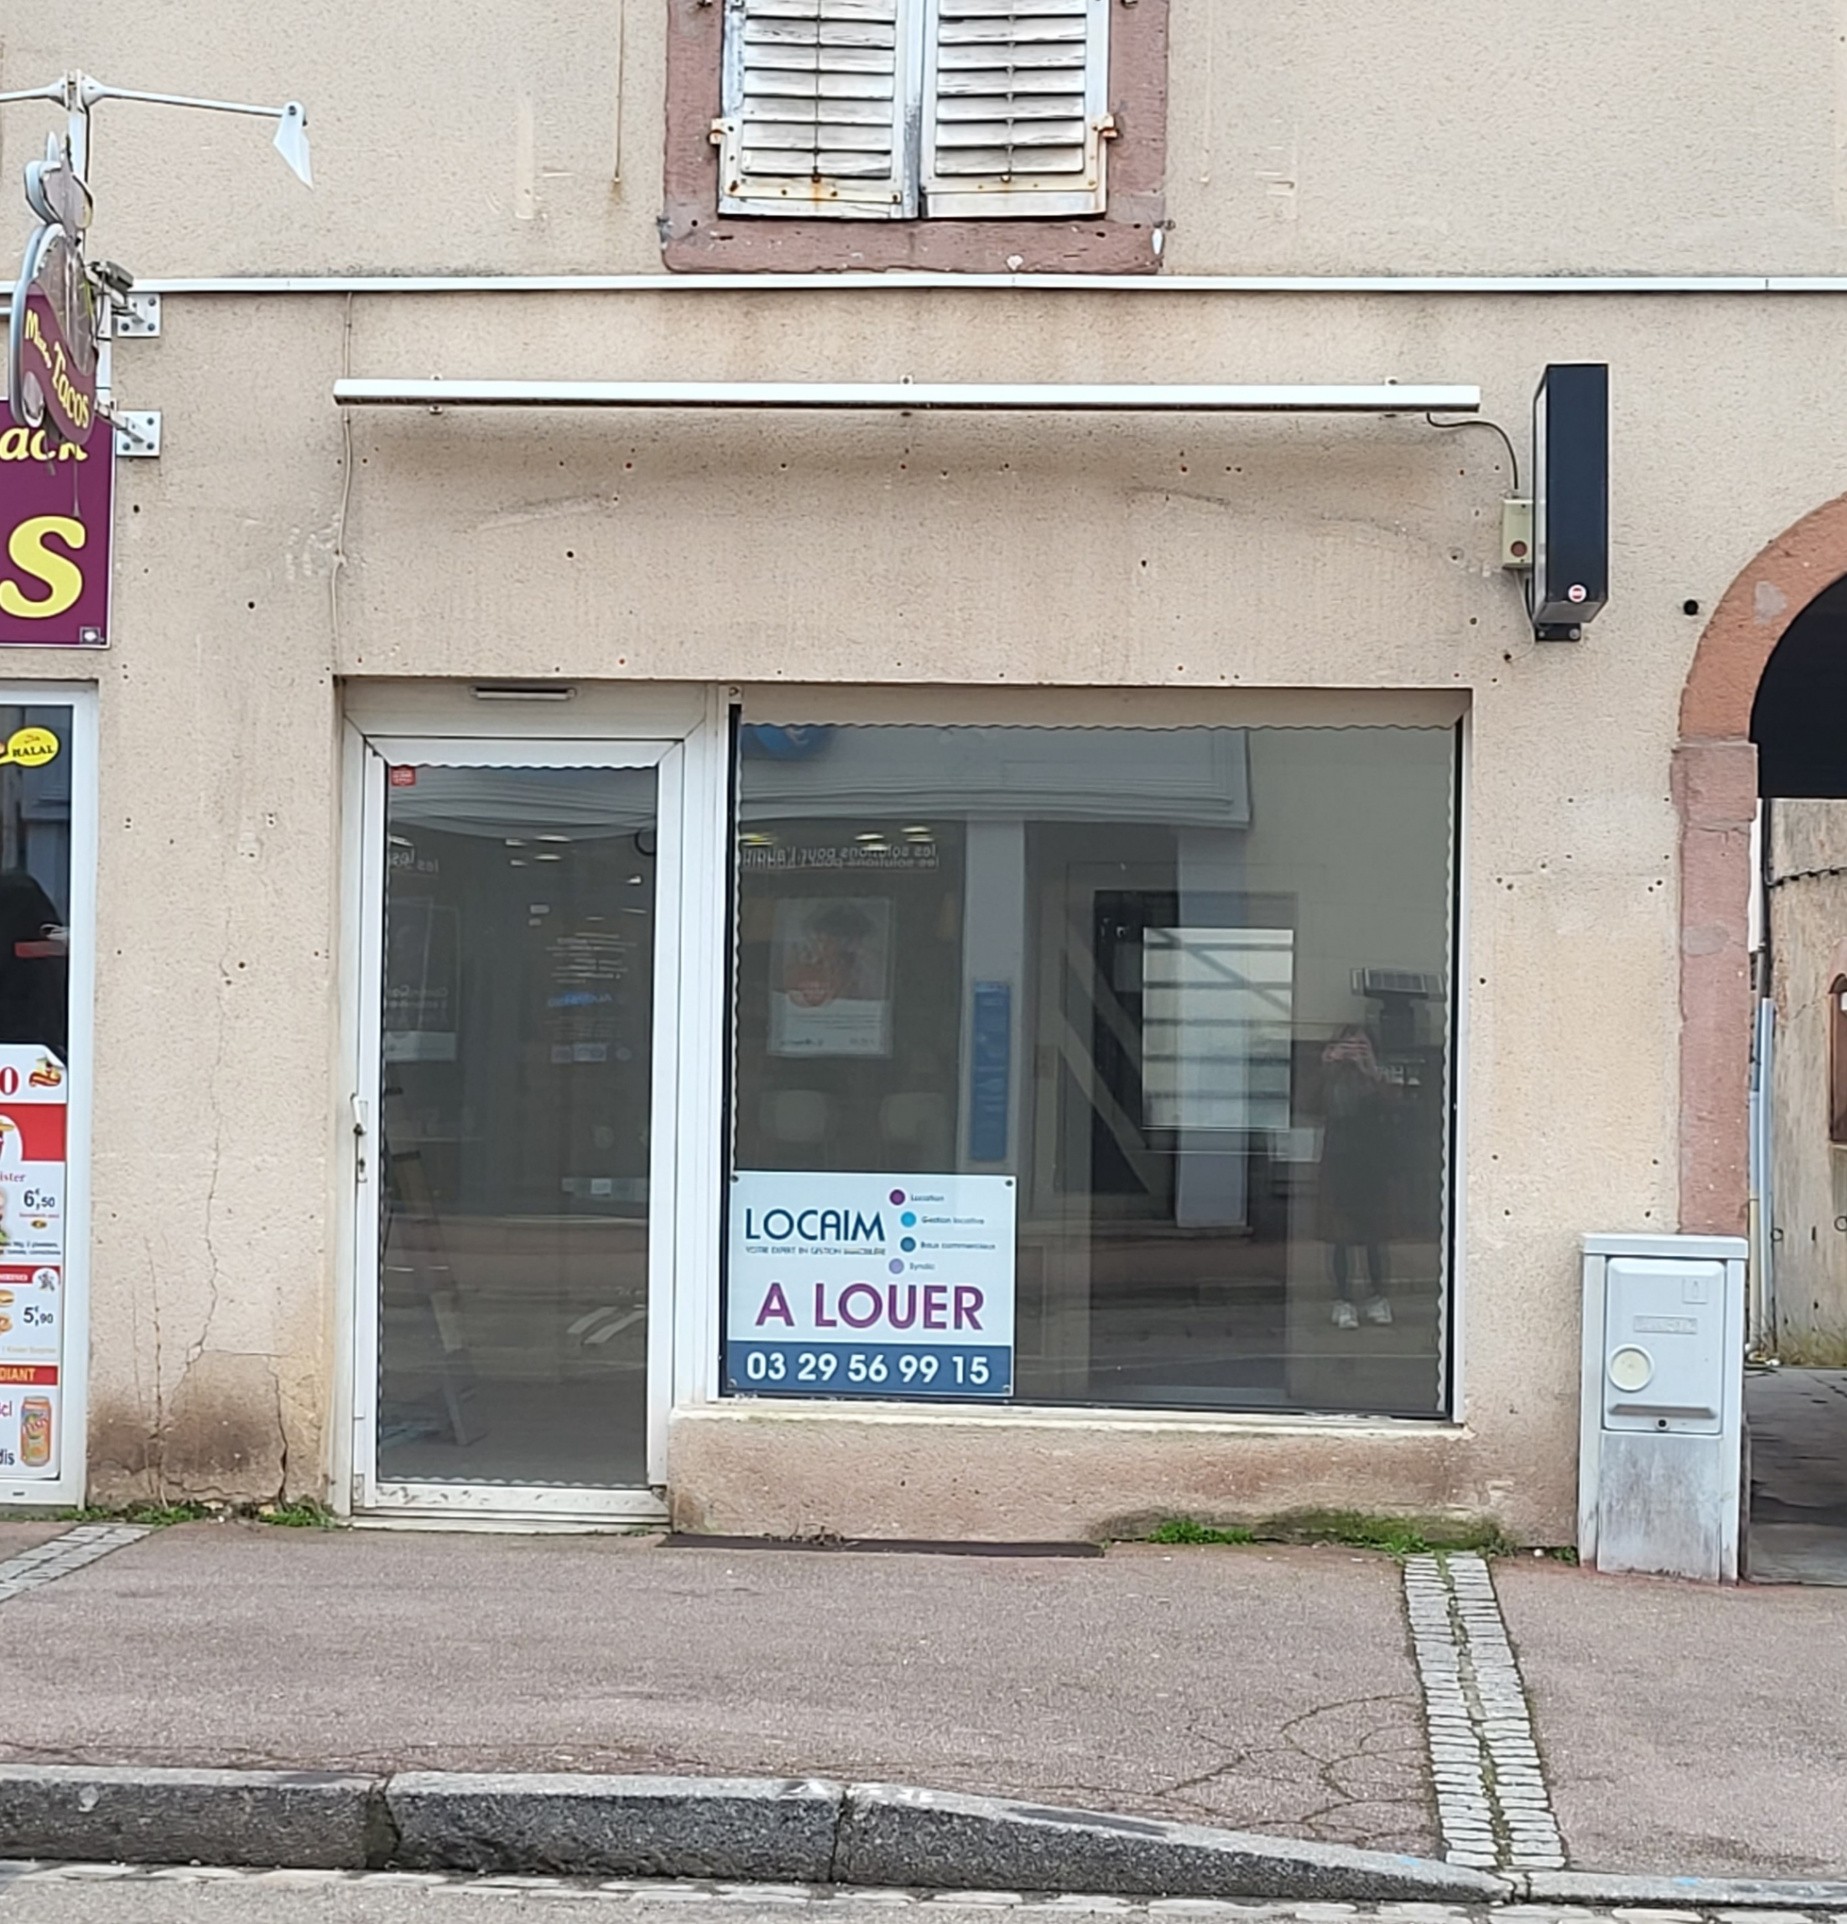 Location Bureau / Commerce à Saint-Dié-des-Vosges 2 pièces